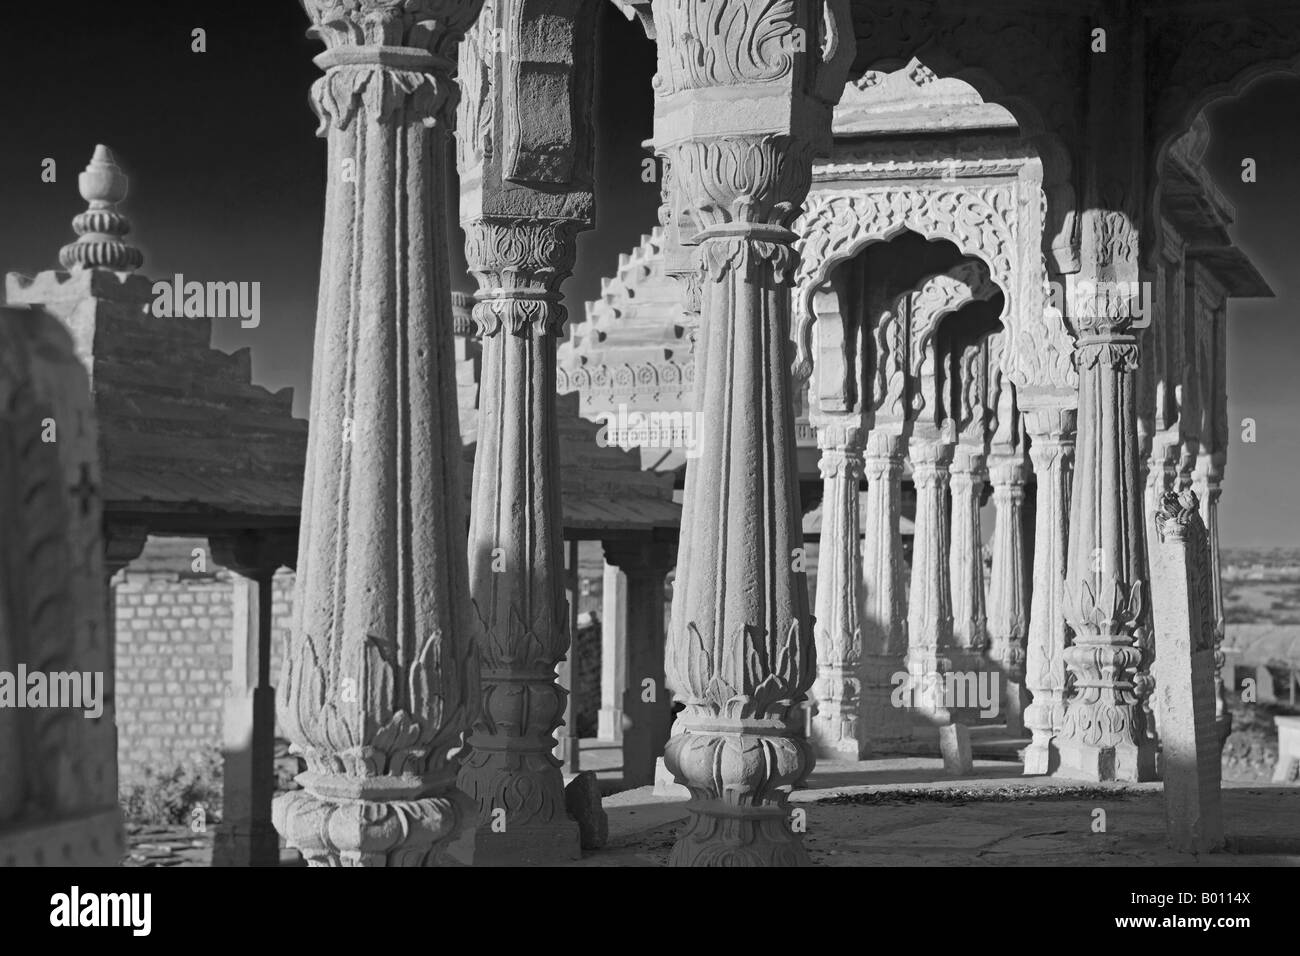 India, Rajasthan, Jaisalmer, Bada Bagh (literally Big Garden) Built by a descendant of Jaisal and maharaja of Jaisalamer. Stock Photo